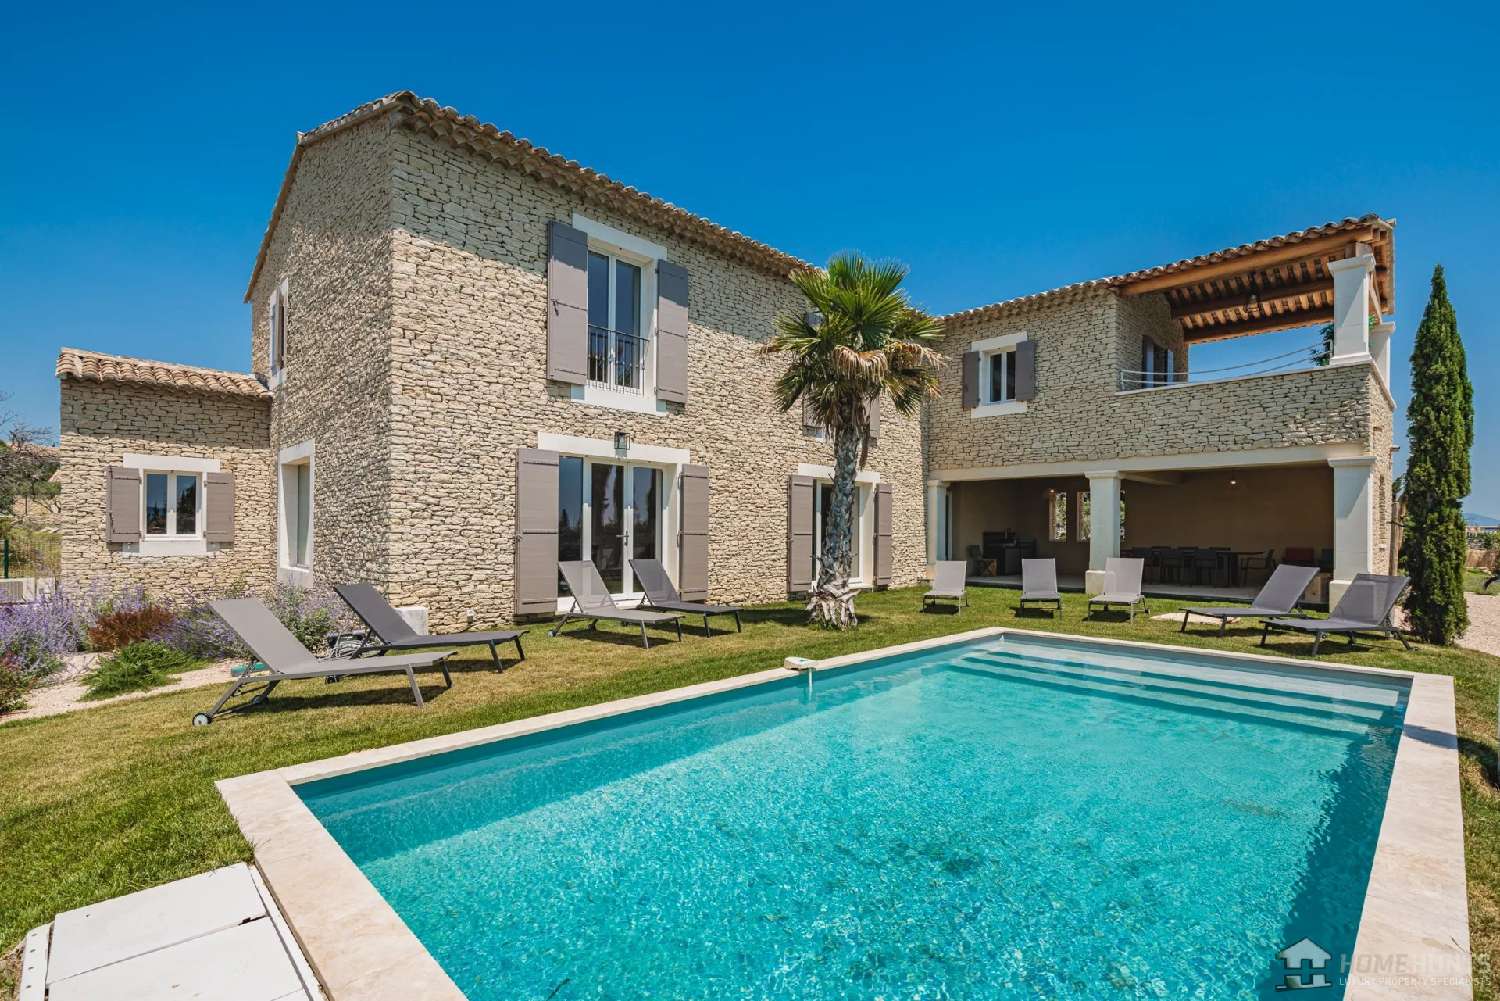  à vendre villa Gordes Vaucluse 4